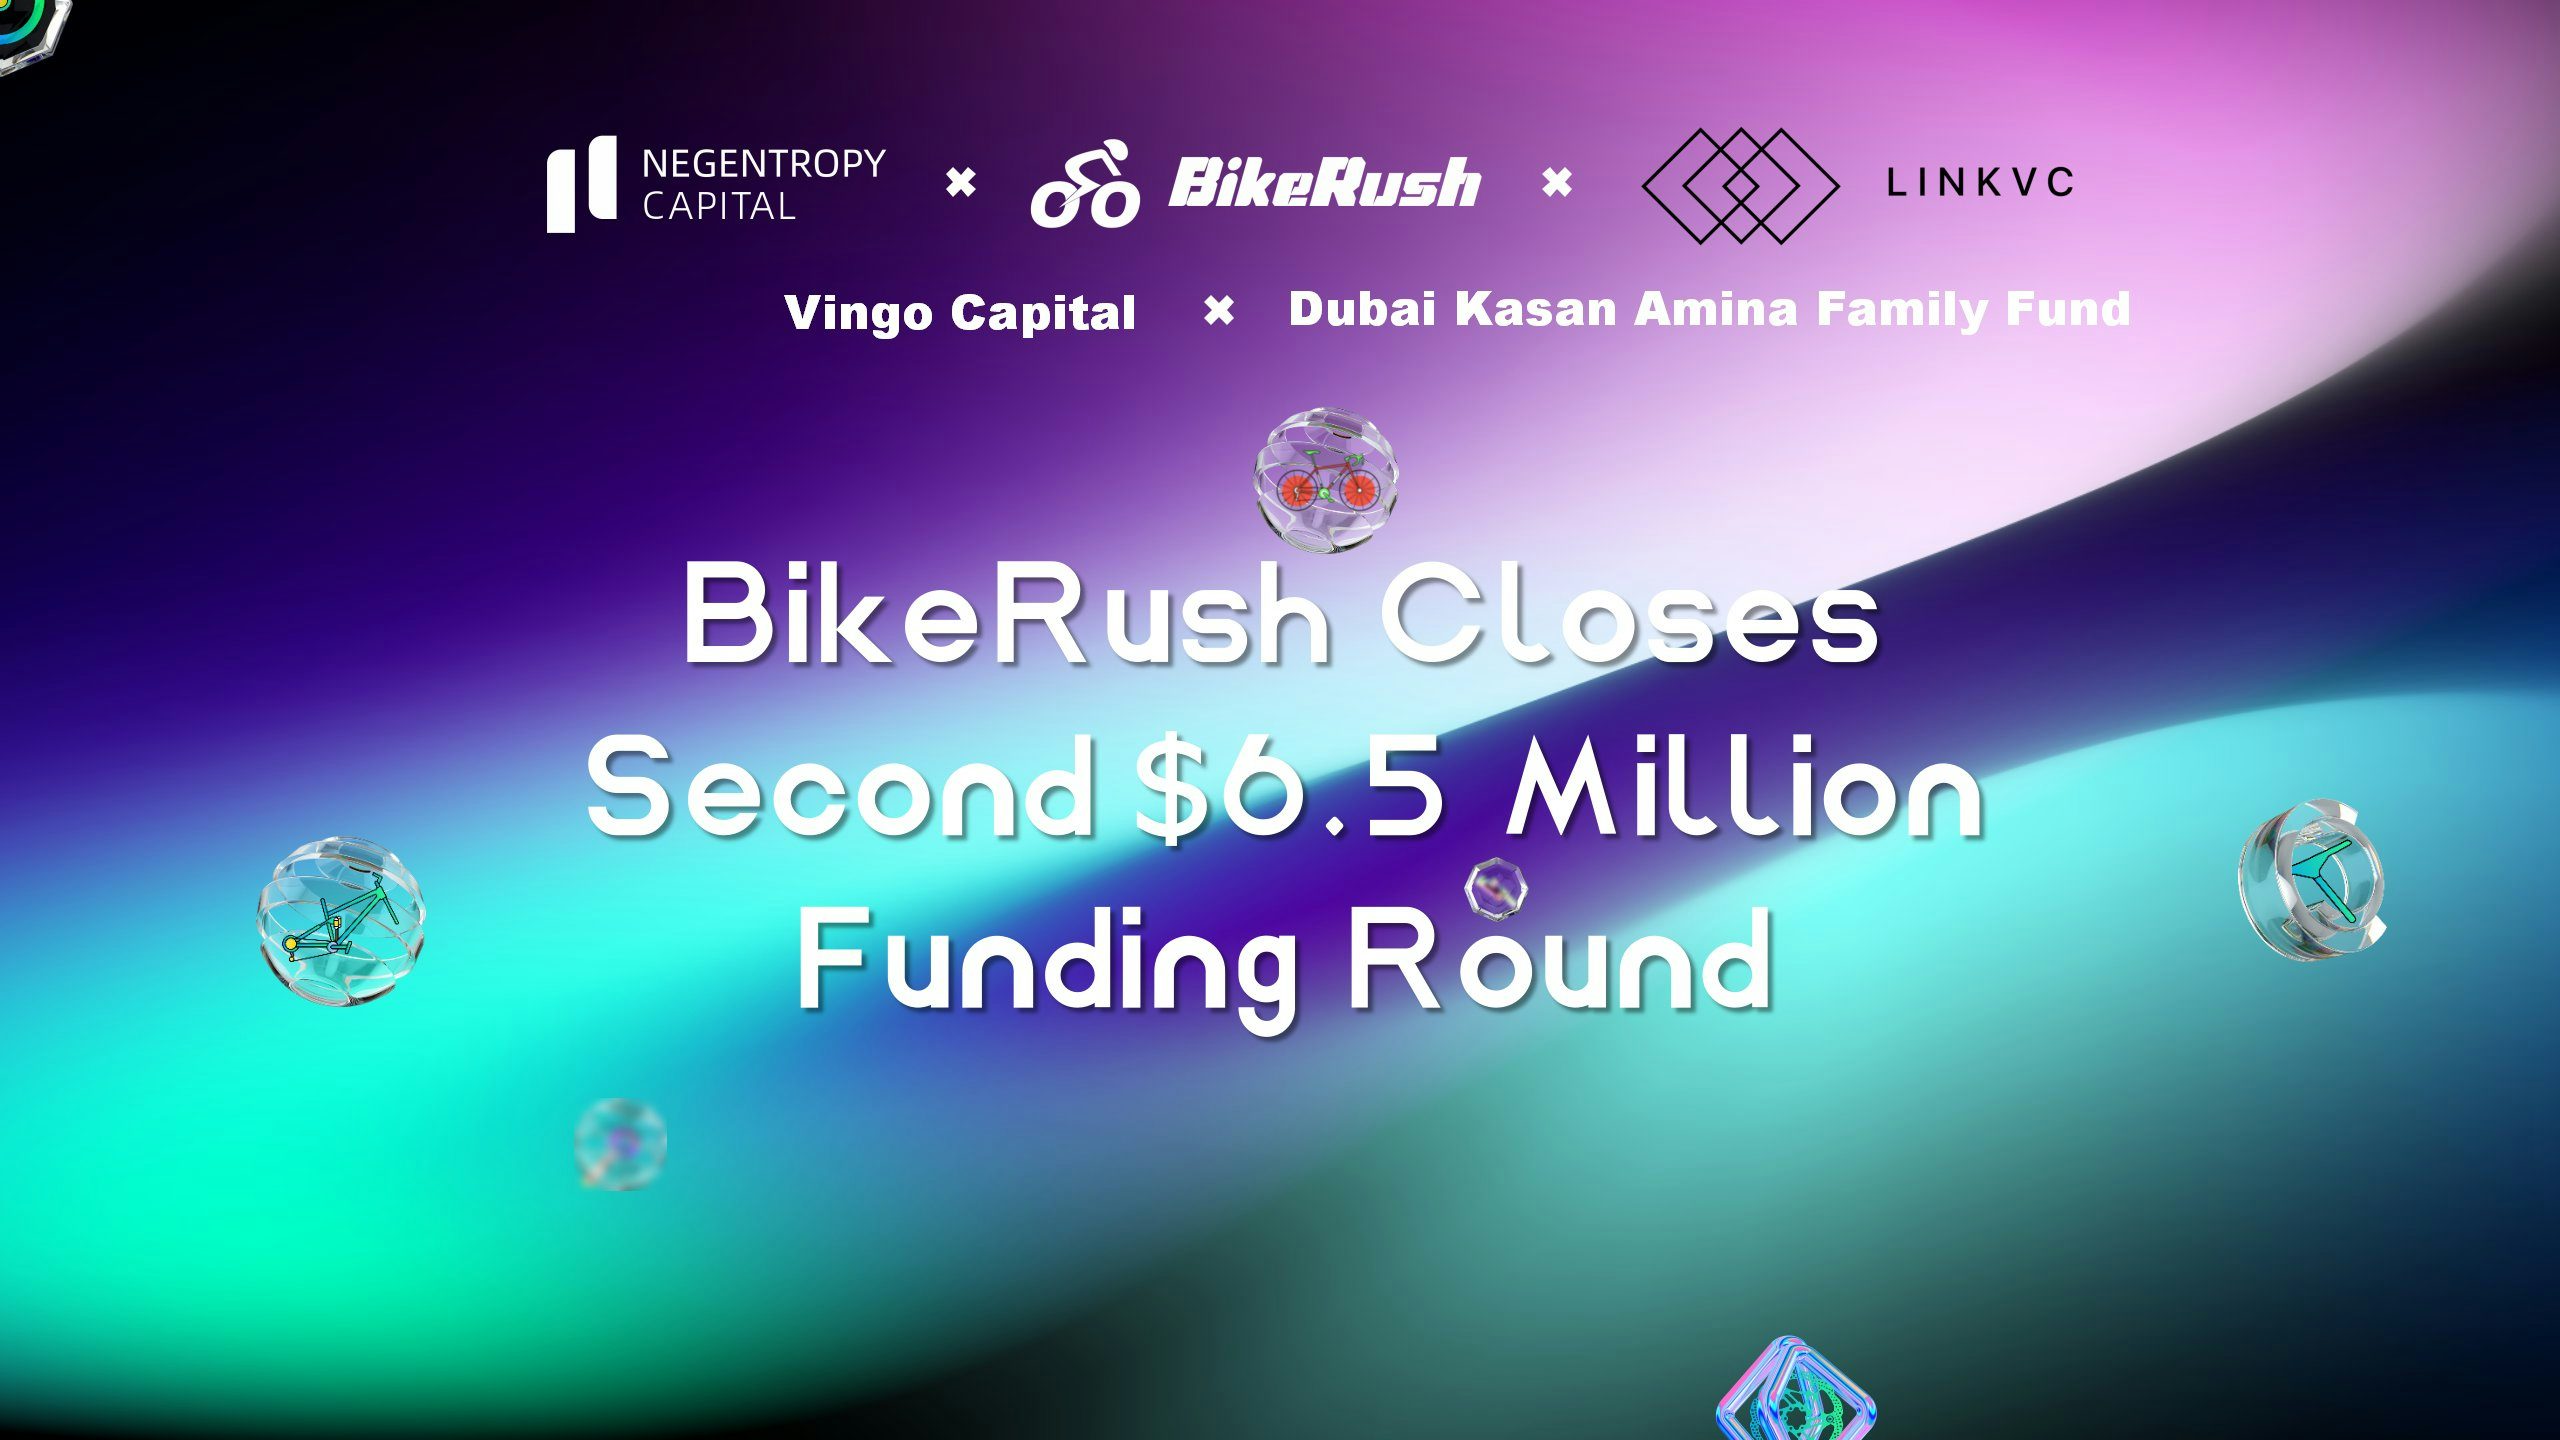 BikeRush Closes Second $6.5 million Funding Round